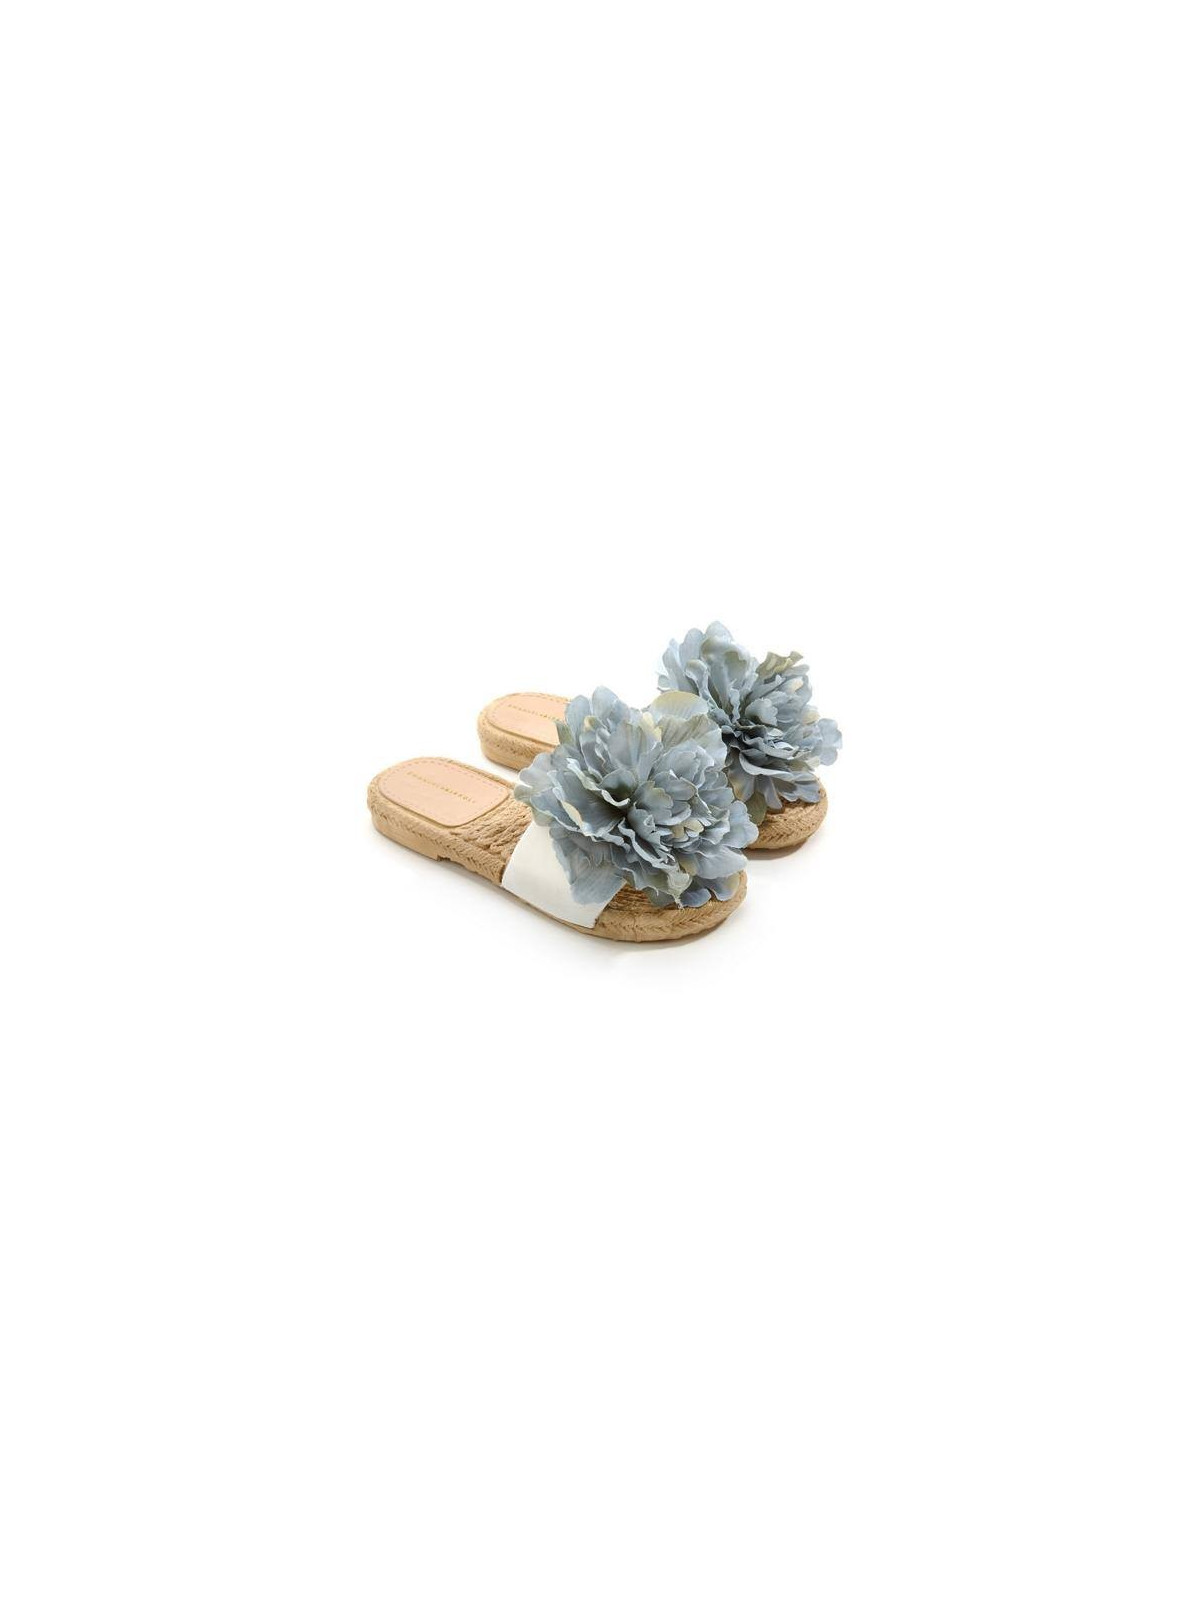 Biffoli Ciabatta in PVC con fiore blu39,00 €